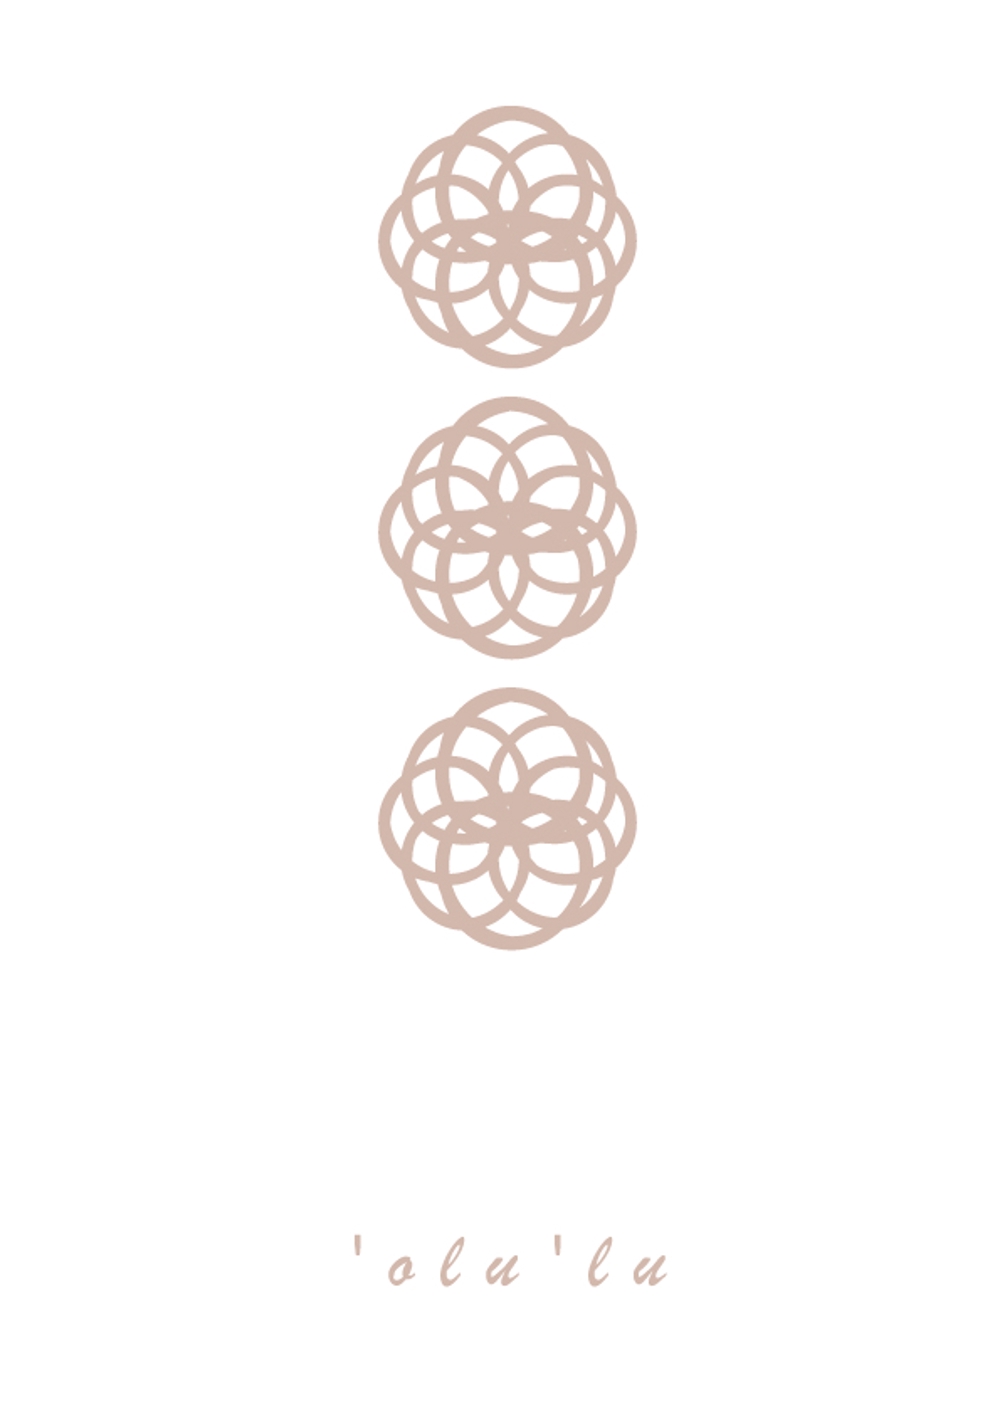 アロマエステ リラクゼーション 'olu'lu のロゴ